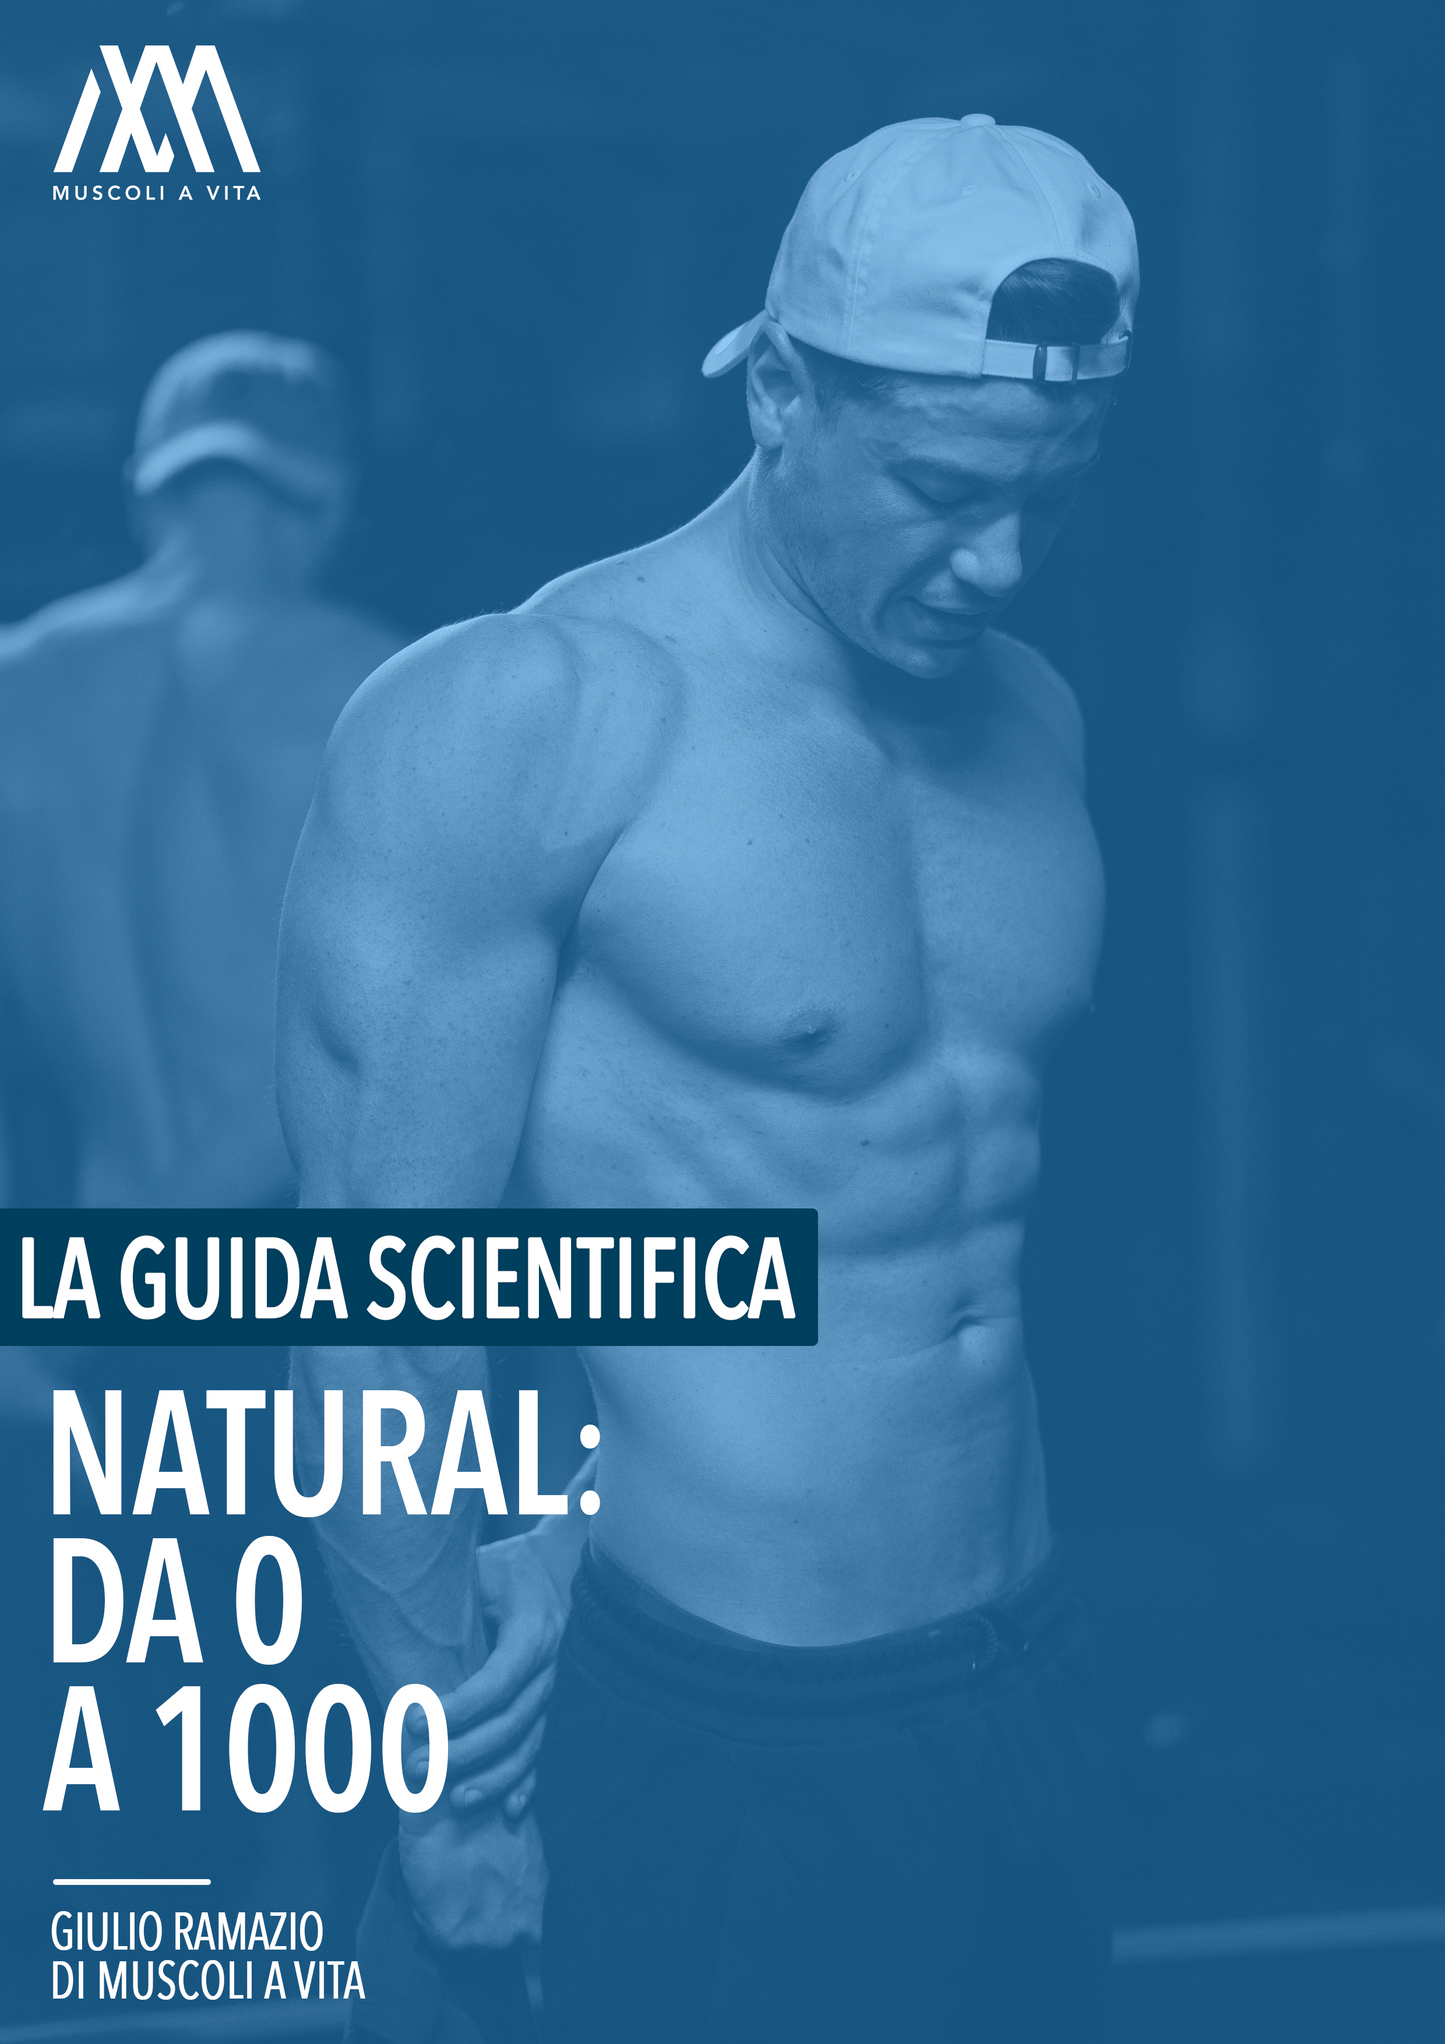 NATURAL: DA 0 A 1000 - La Guida Scientifica 2.0